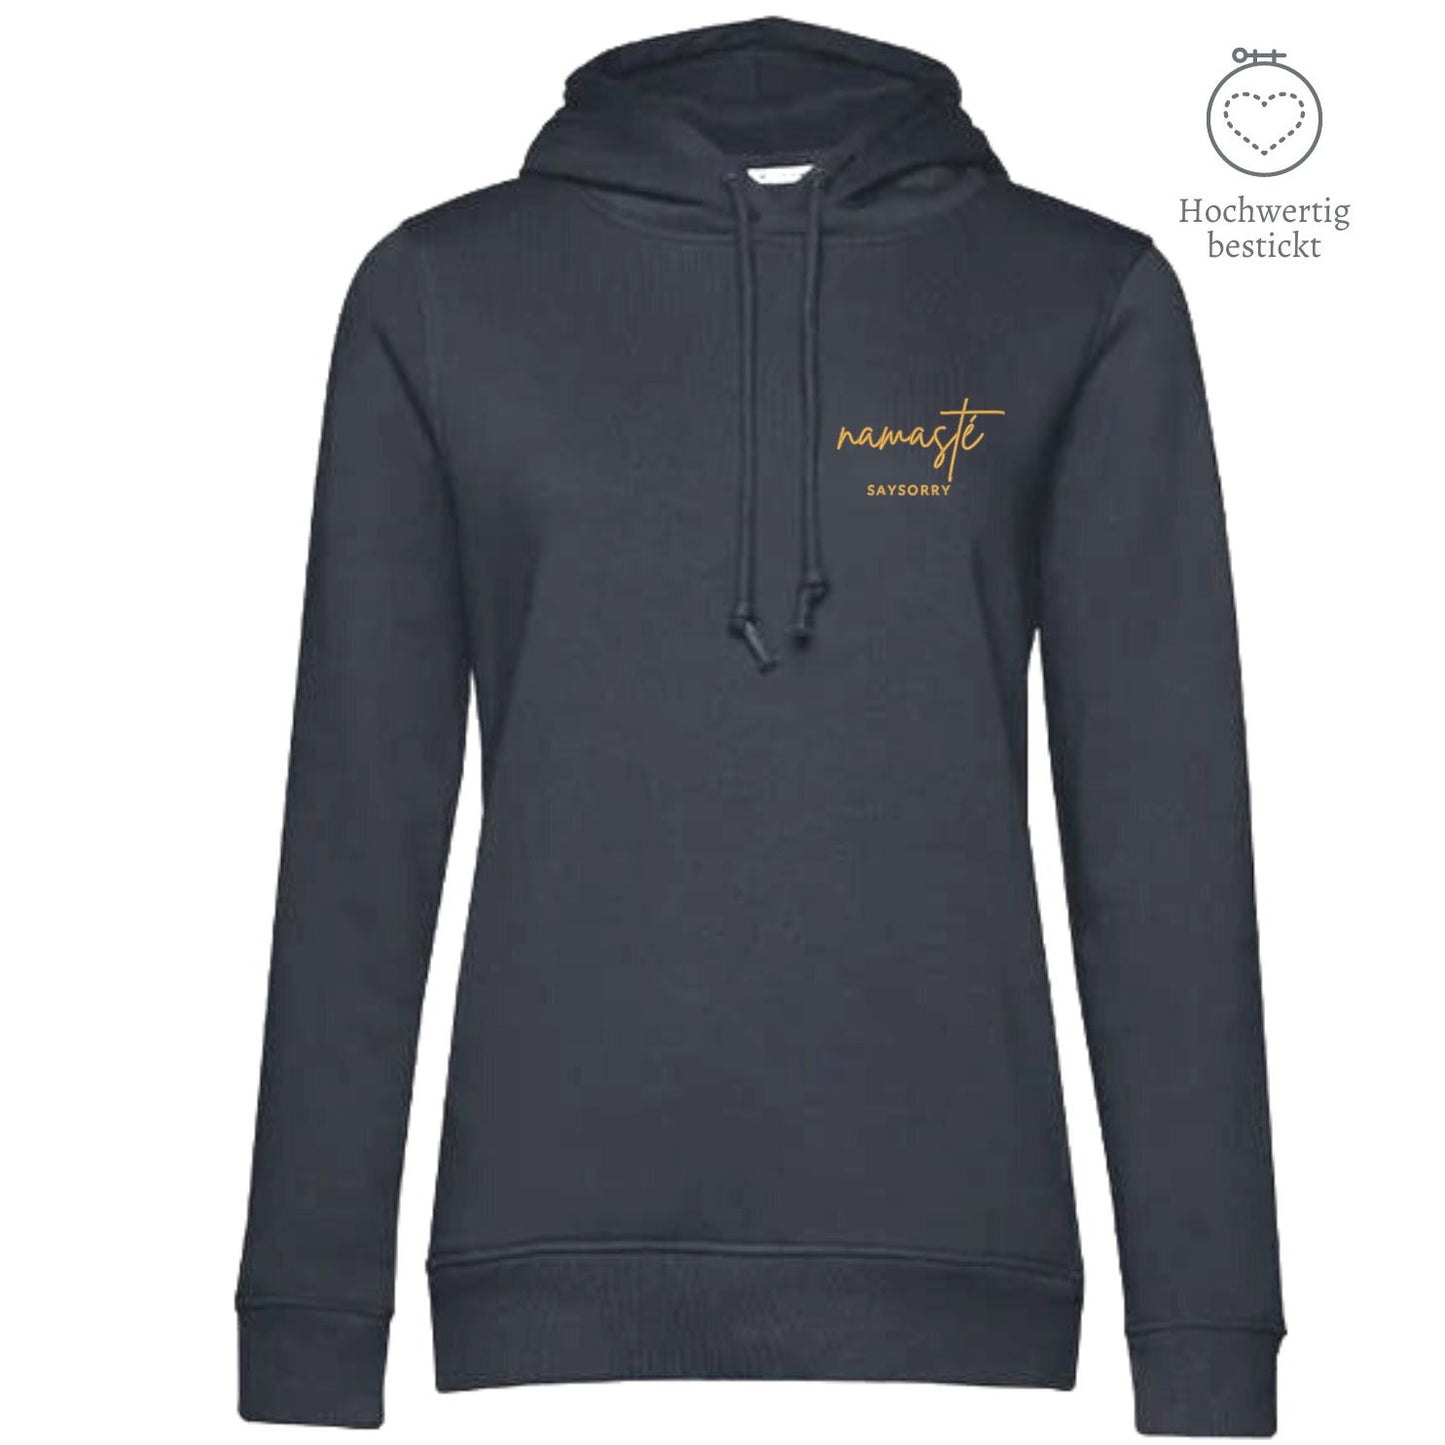 Organic & recycelter Damen Hoodie »Namasté in Gold« hochwertig bestickt Shirt SAYSORRY Asphalt XS 